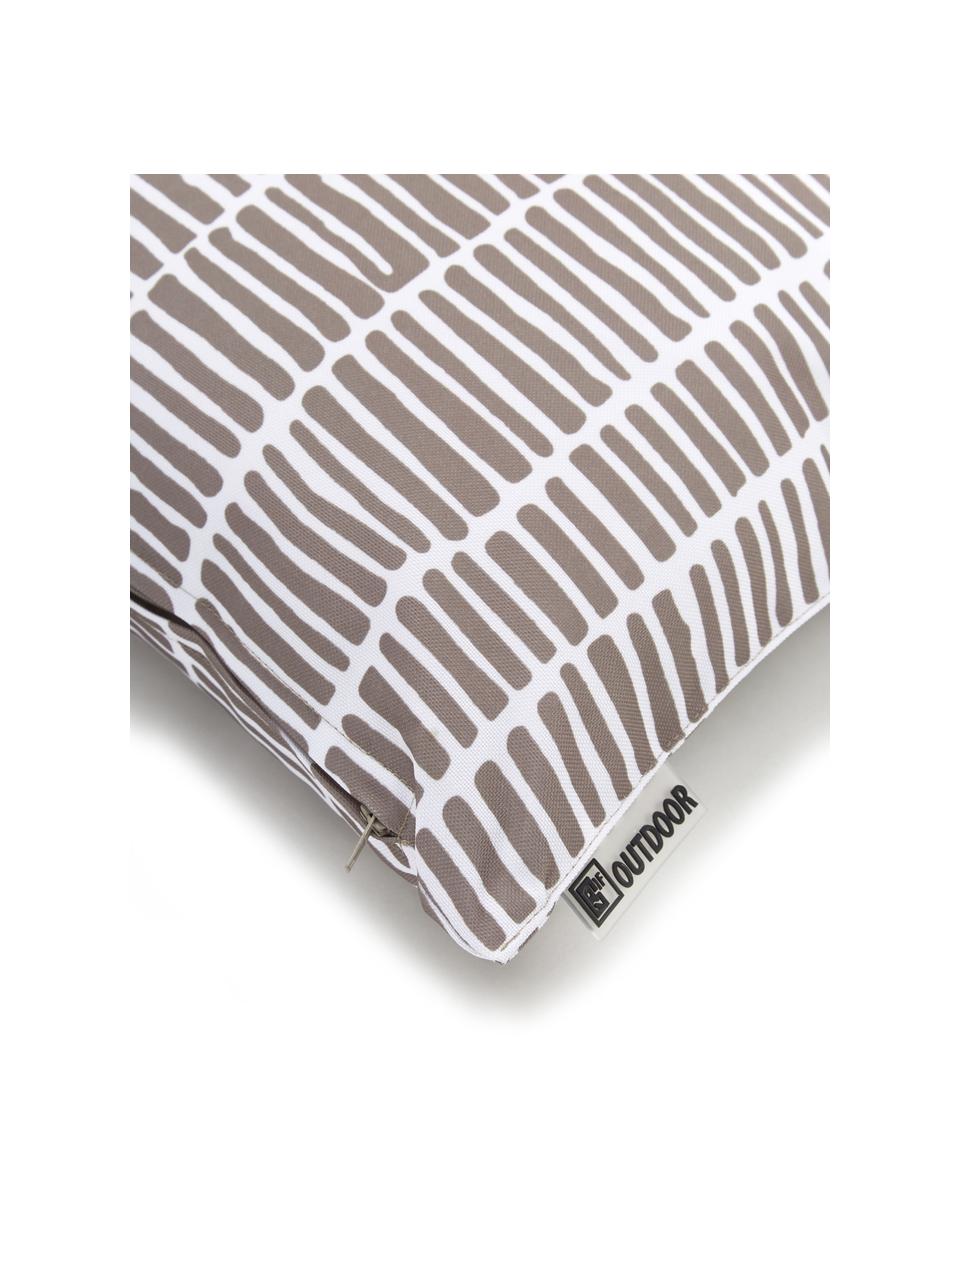 Outdoor-Kissen Little Stripe, mit Inlett, 100% Polyester, Weiß, Taupe, B 47 x L 47 cm